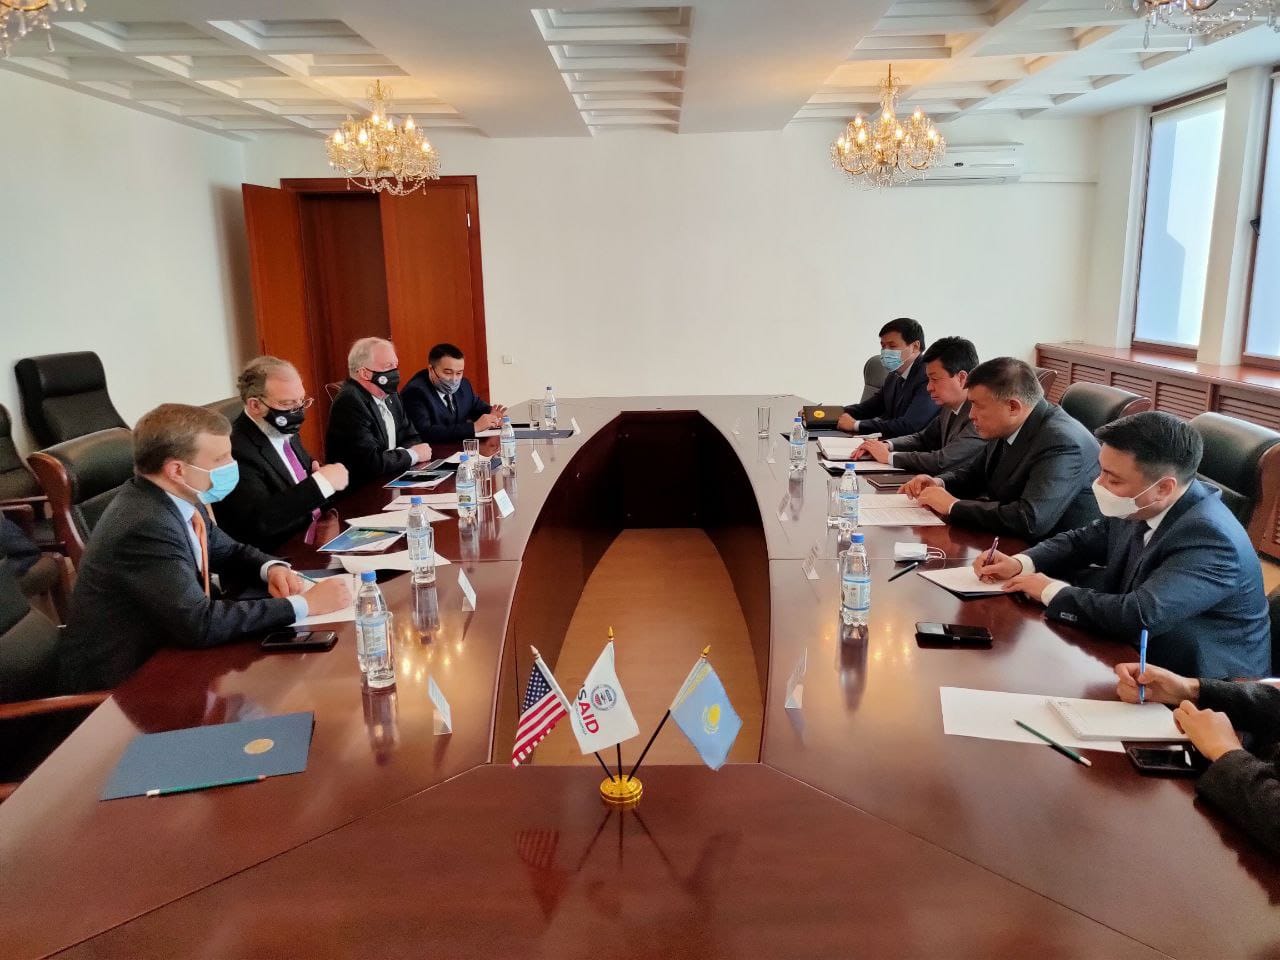 Перспективы сотрудничества Казахстана и США в сфере официальной помощи развитию обсудили в Алматы